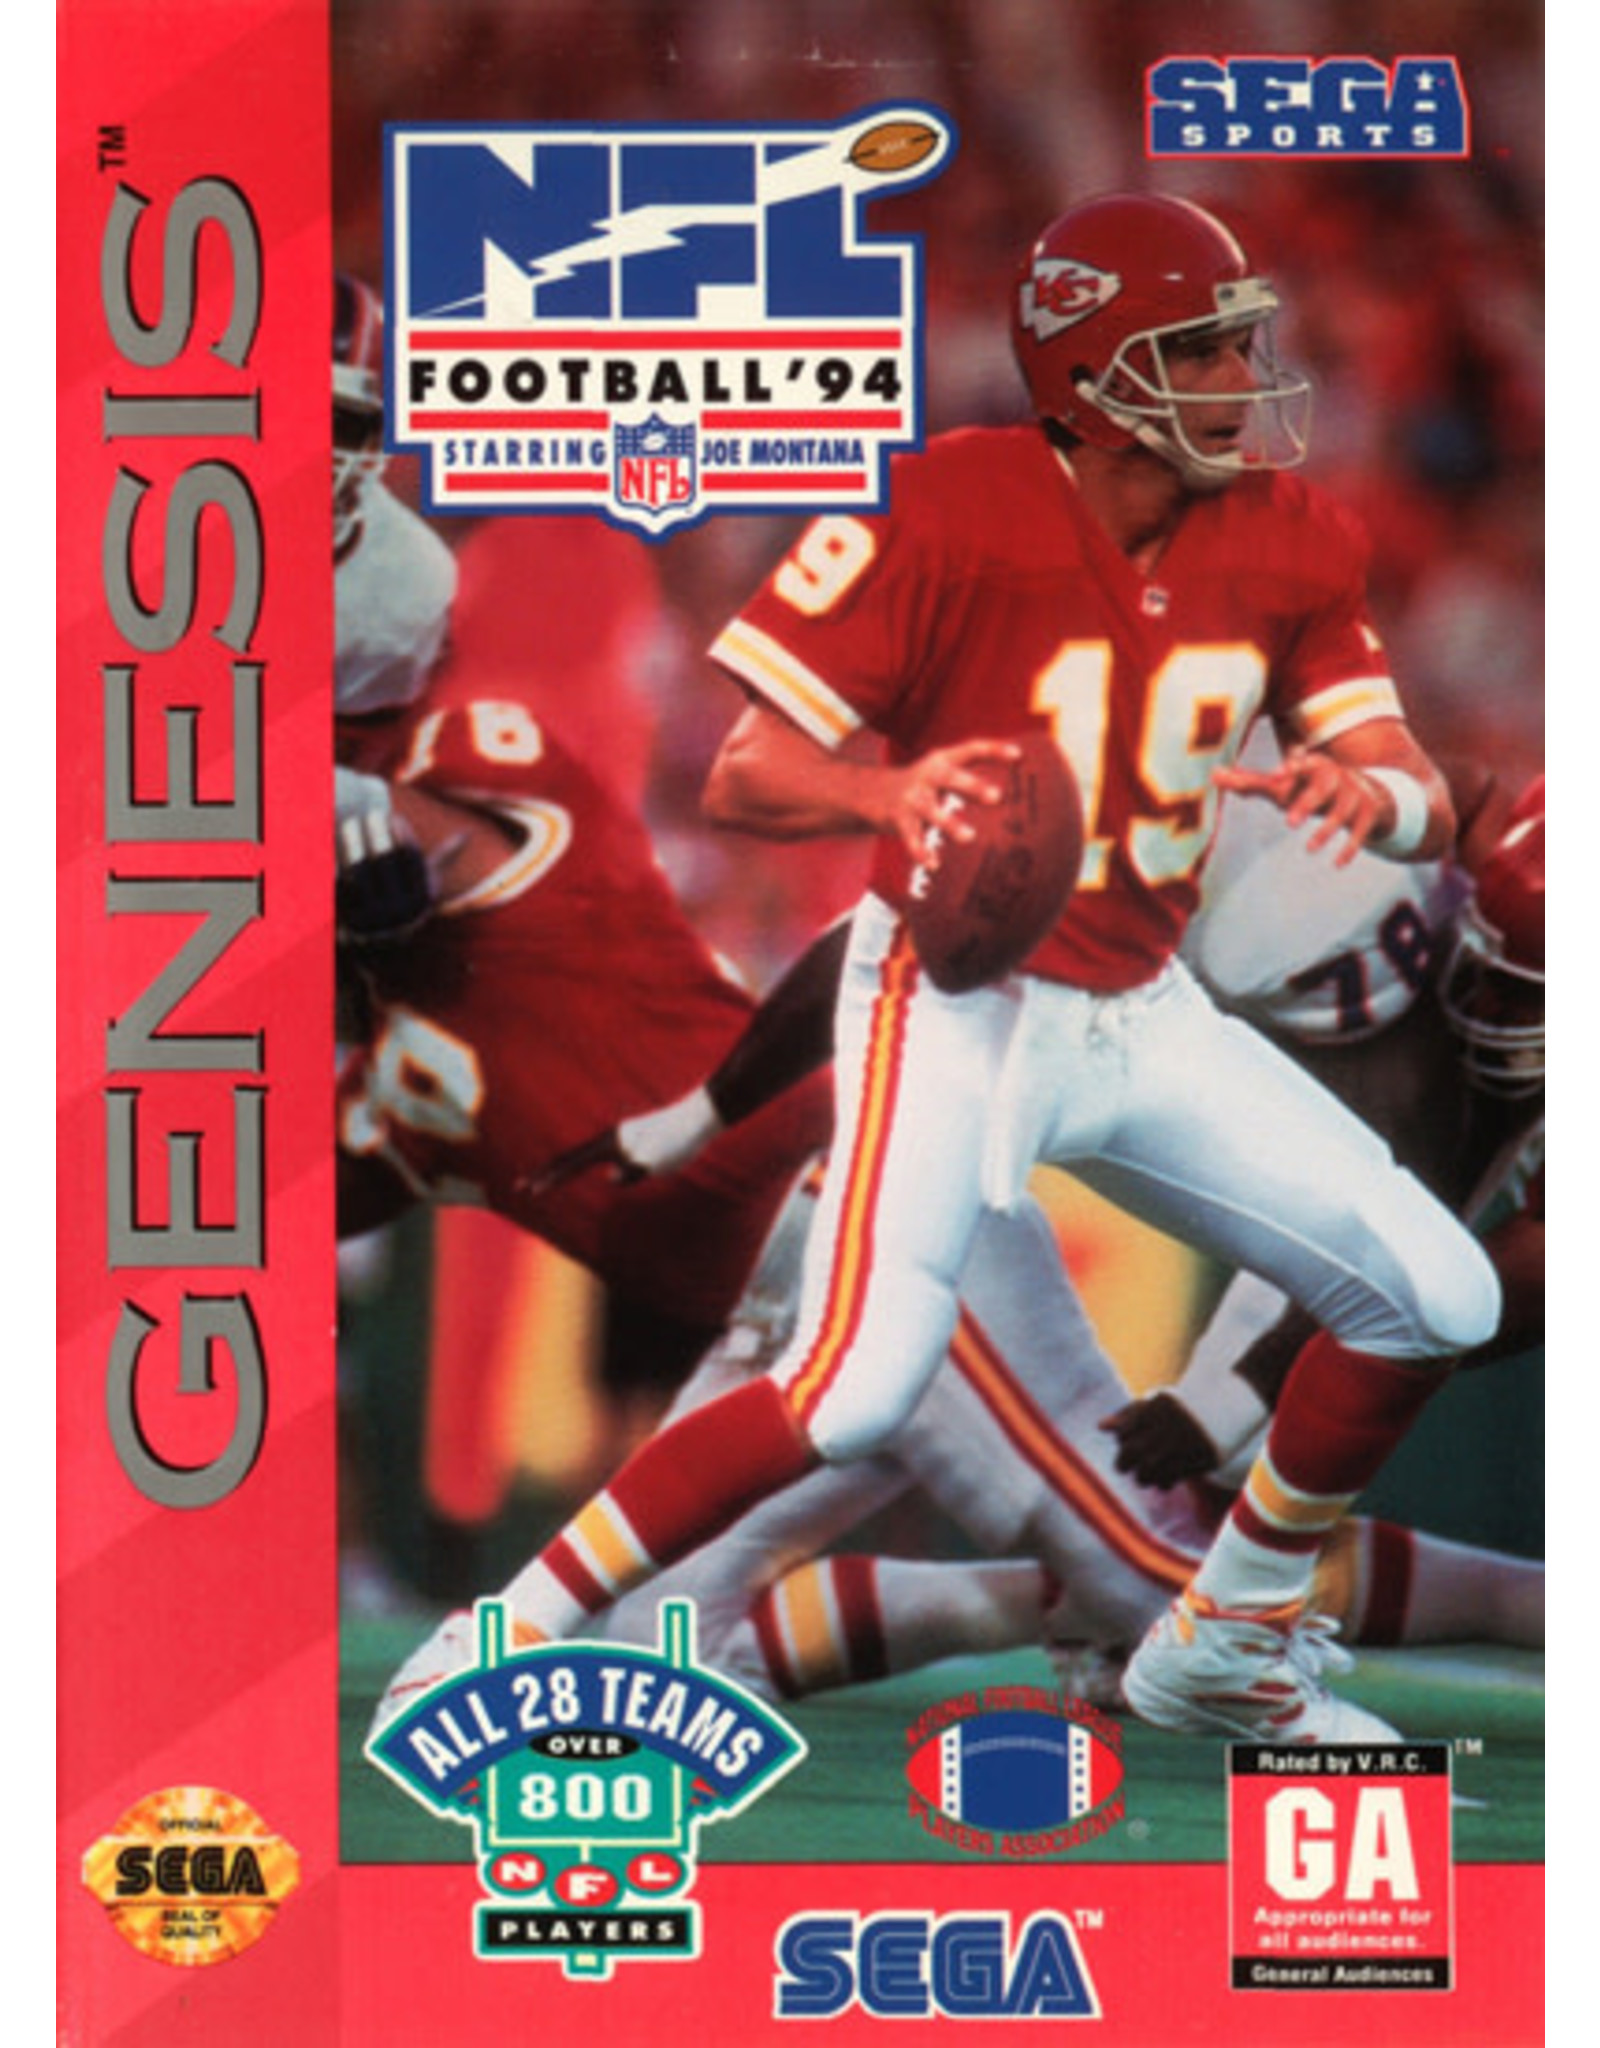 Sega Genesis NFL Football '94 Starring Joe Montana (CiB)